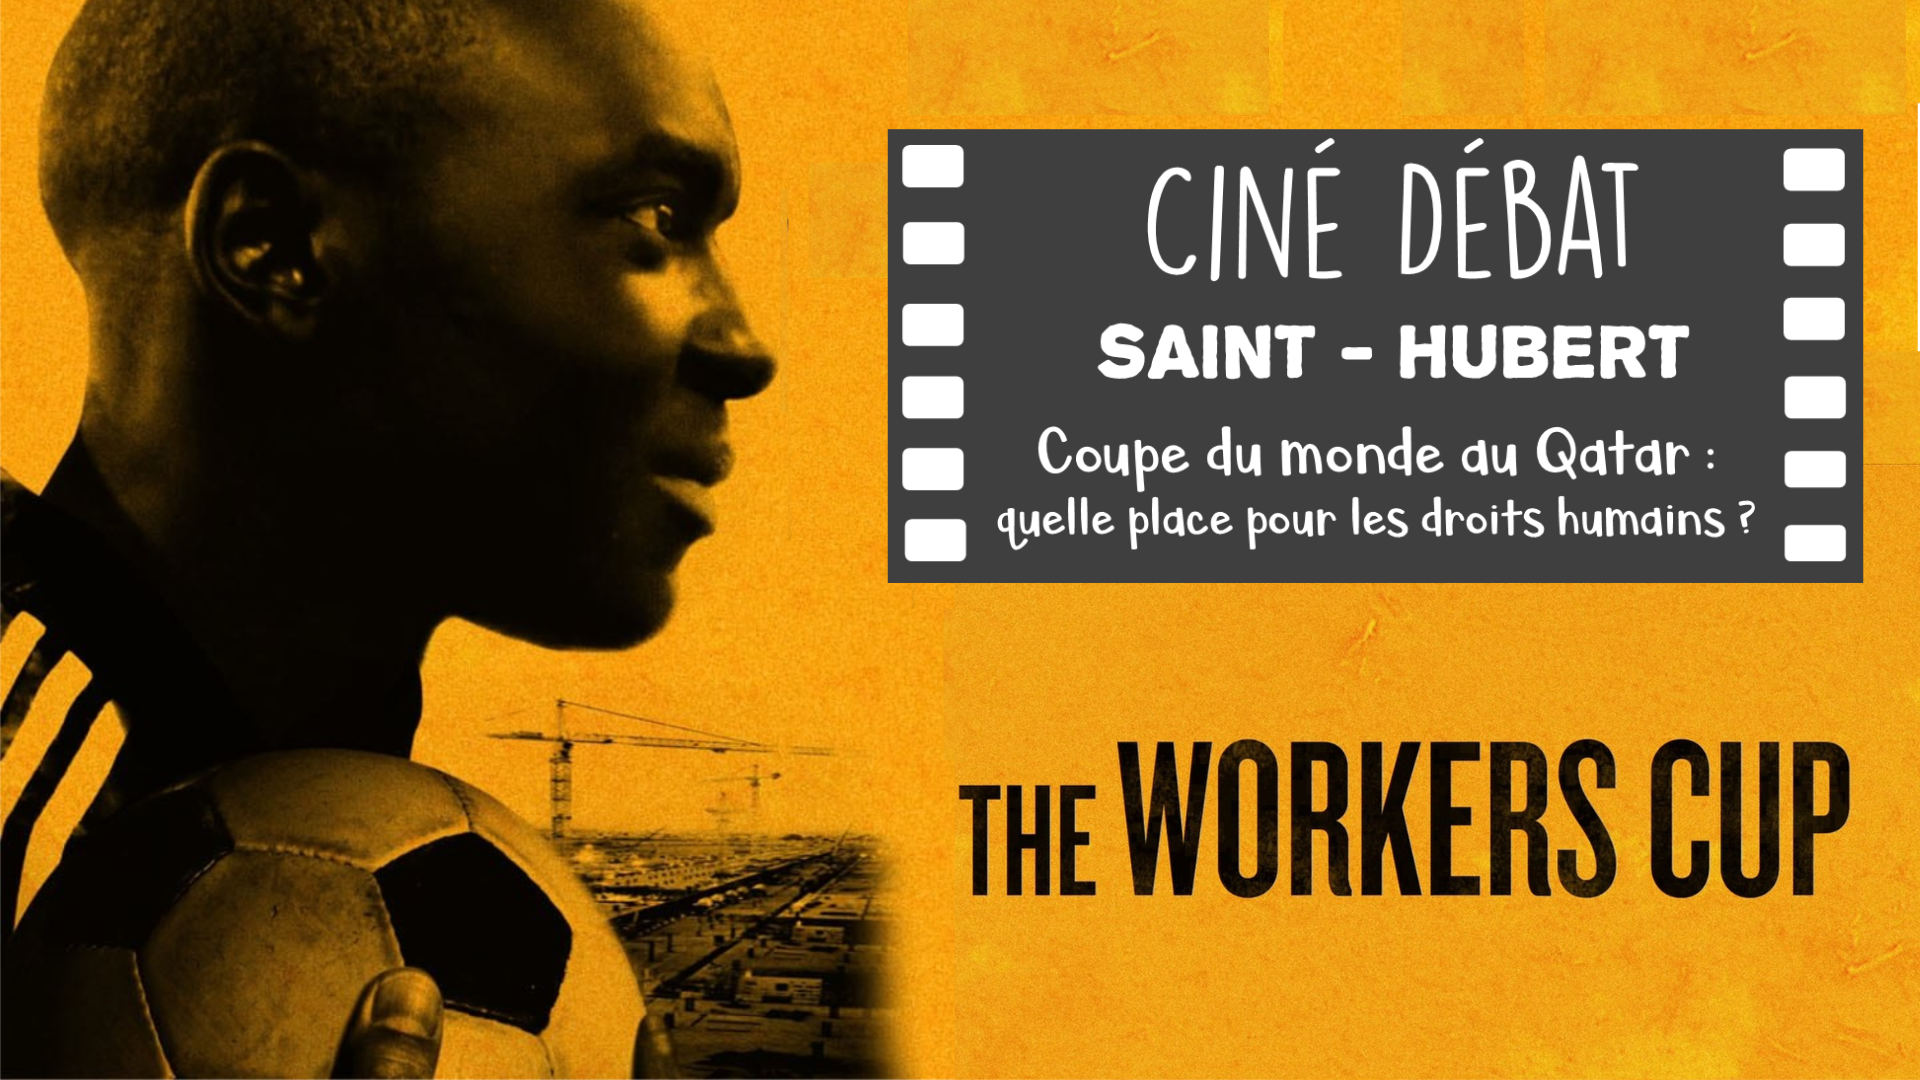 The workers cup cine debat st hubert